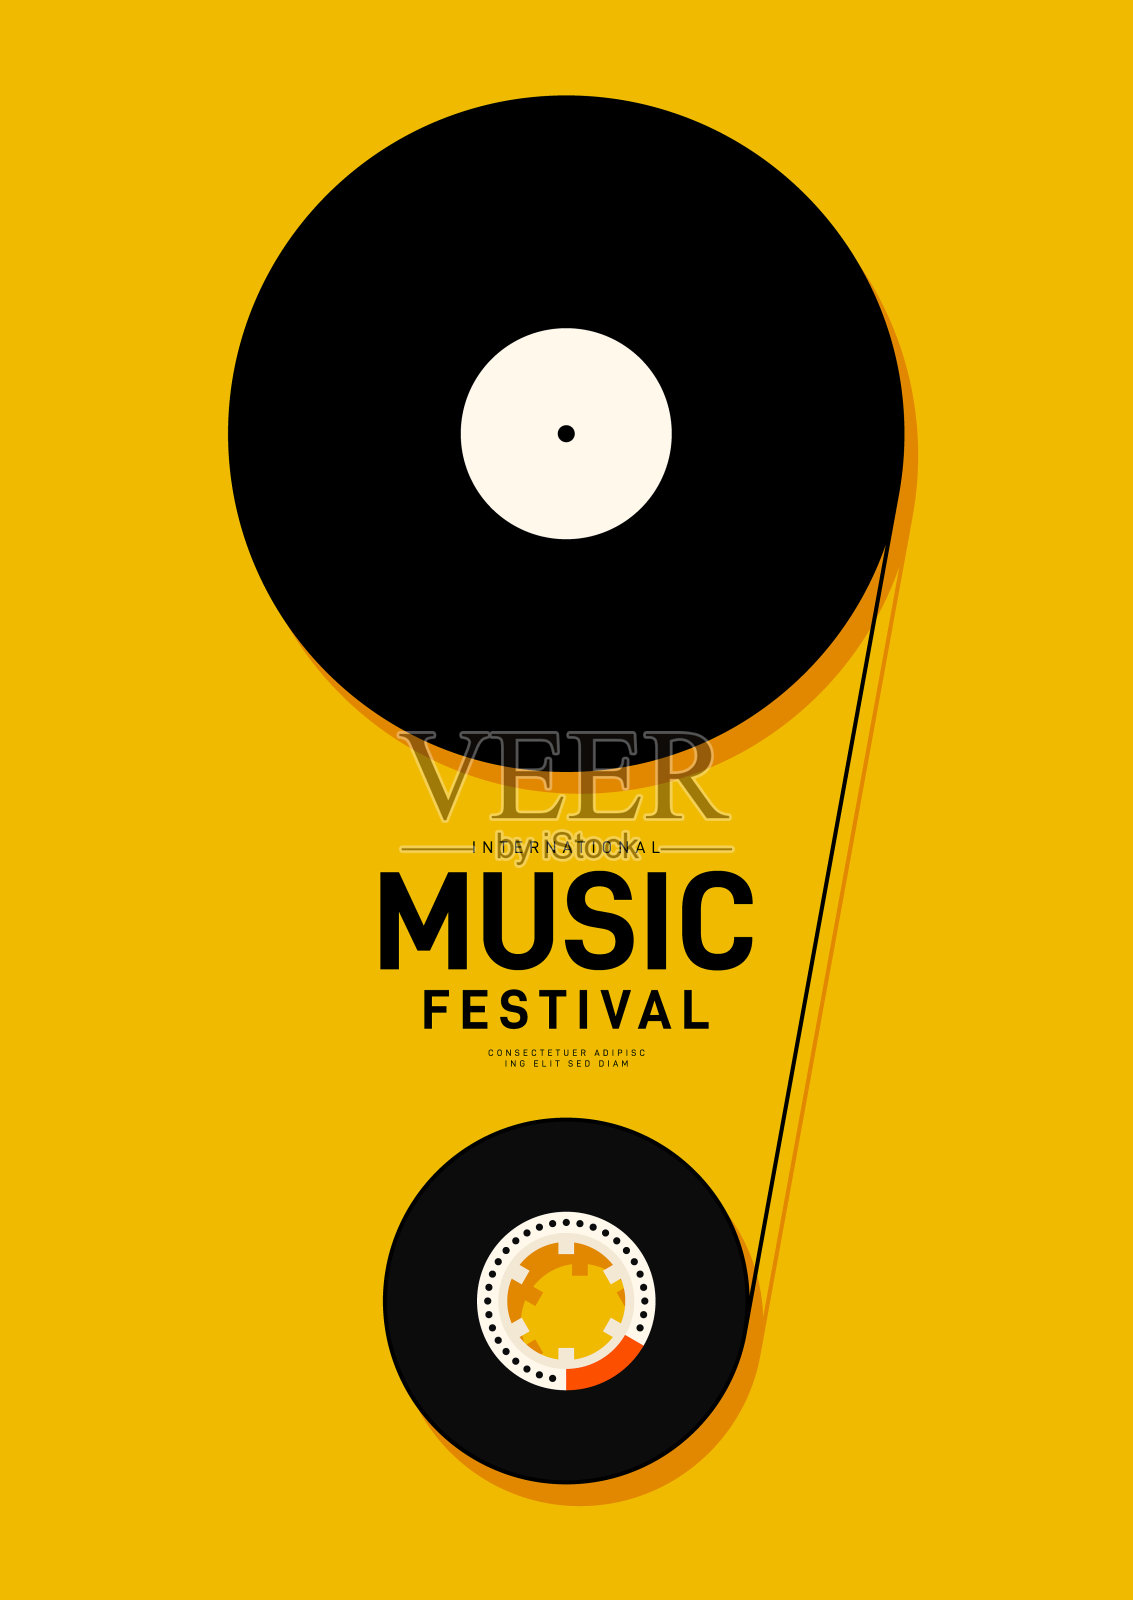 音乐节海报设计模板背景与黑胶唱片和磁带设计模板素材